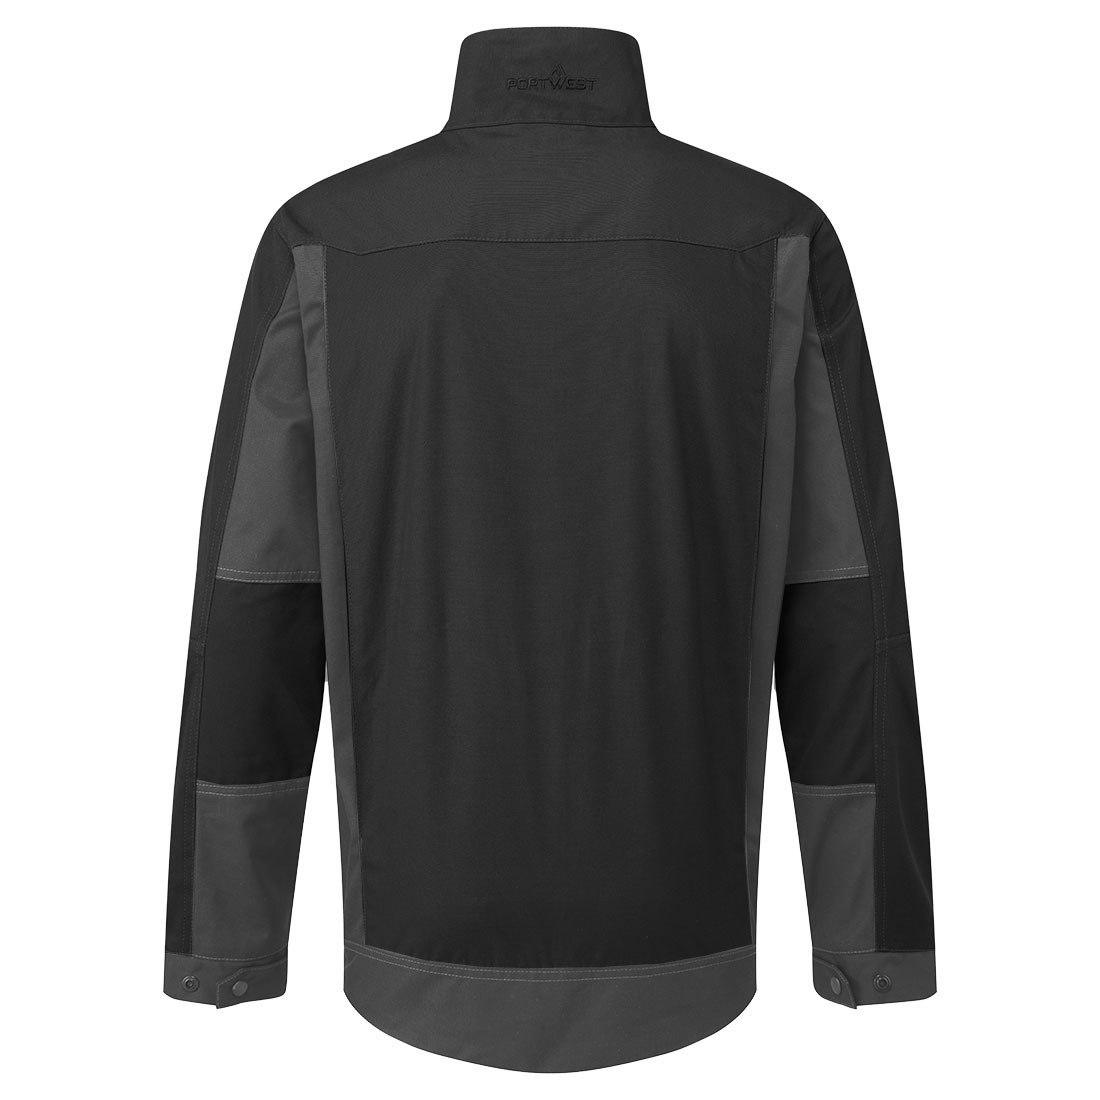 Veste Lavage Industriel WX3 - Les vêtements de protection